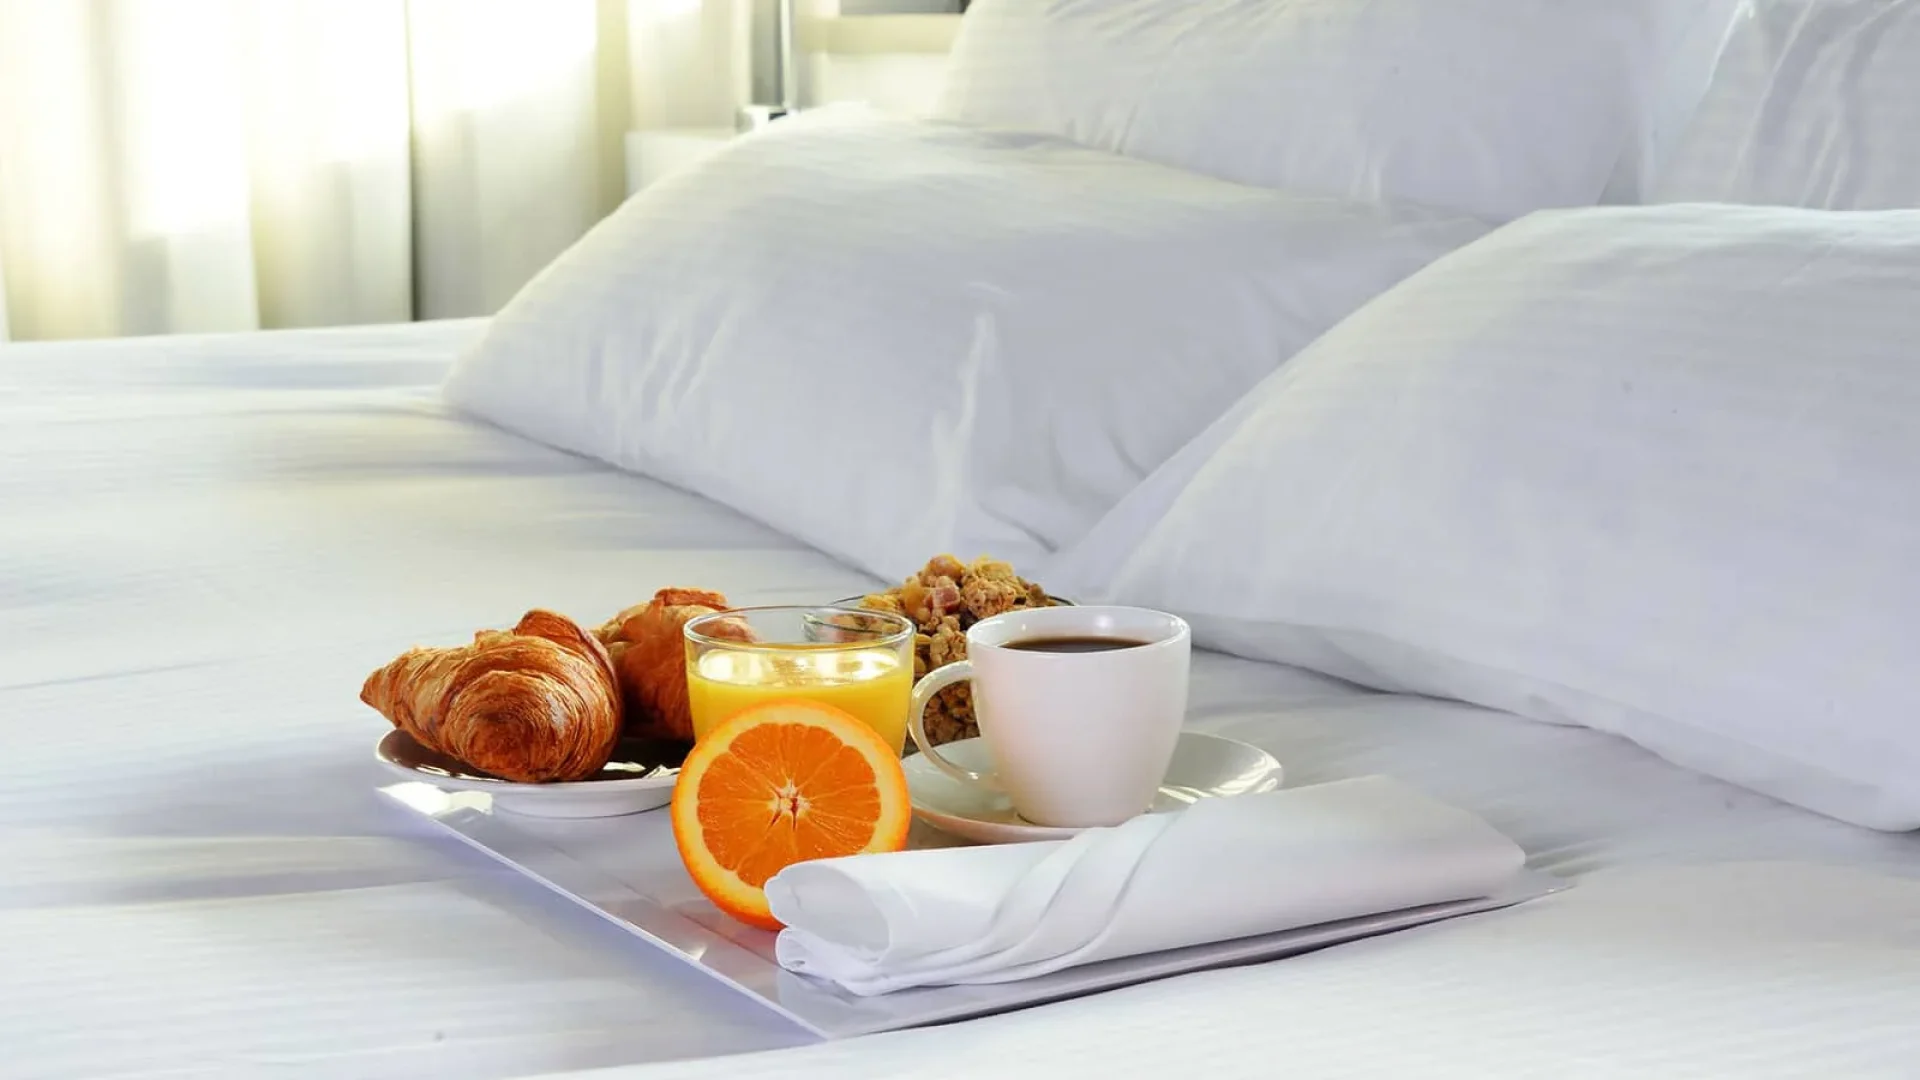 photo prise dans un hôtel de la barre de monts fromentine. on y voit le petit déjeuner sur le lit